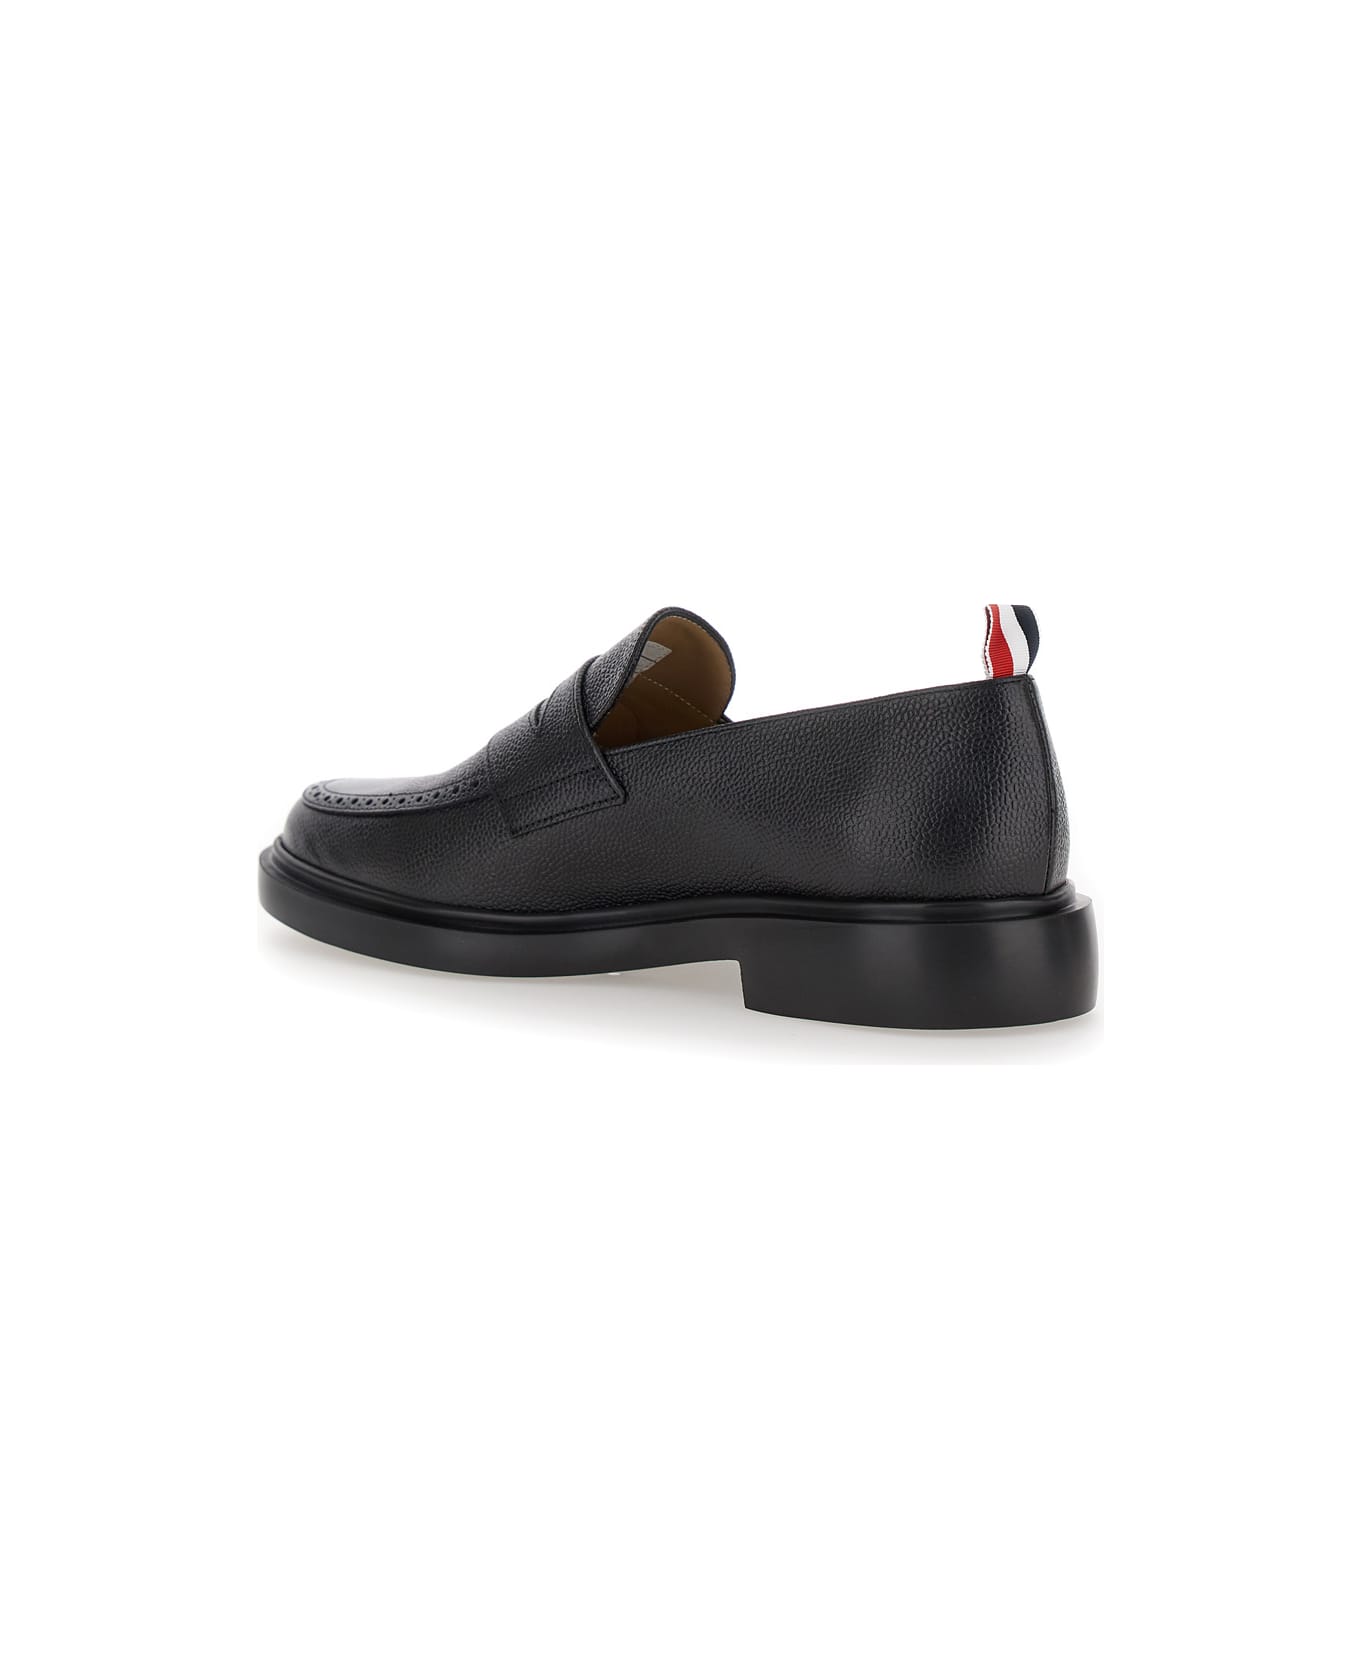 Thom Browne Black Slip-on Loafers With Loop Detail In Leather Man - Black